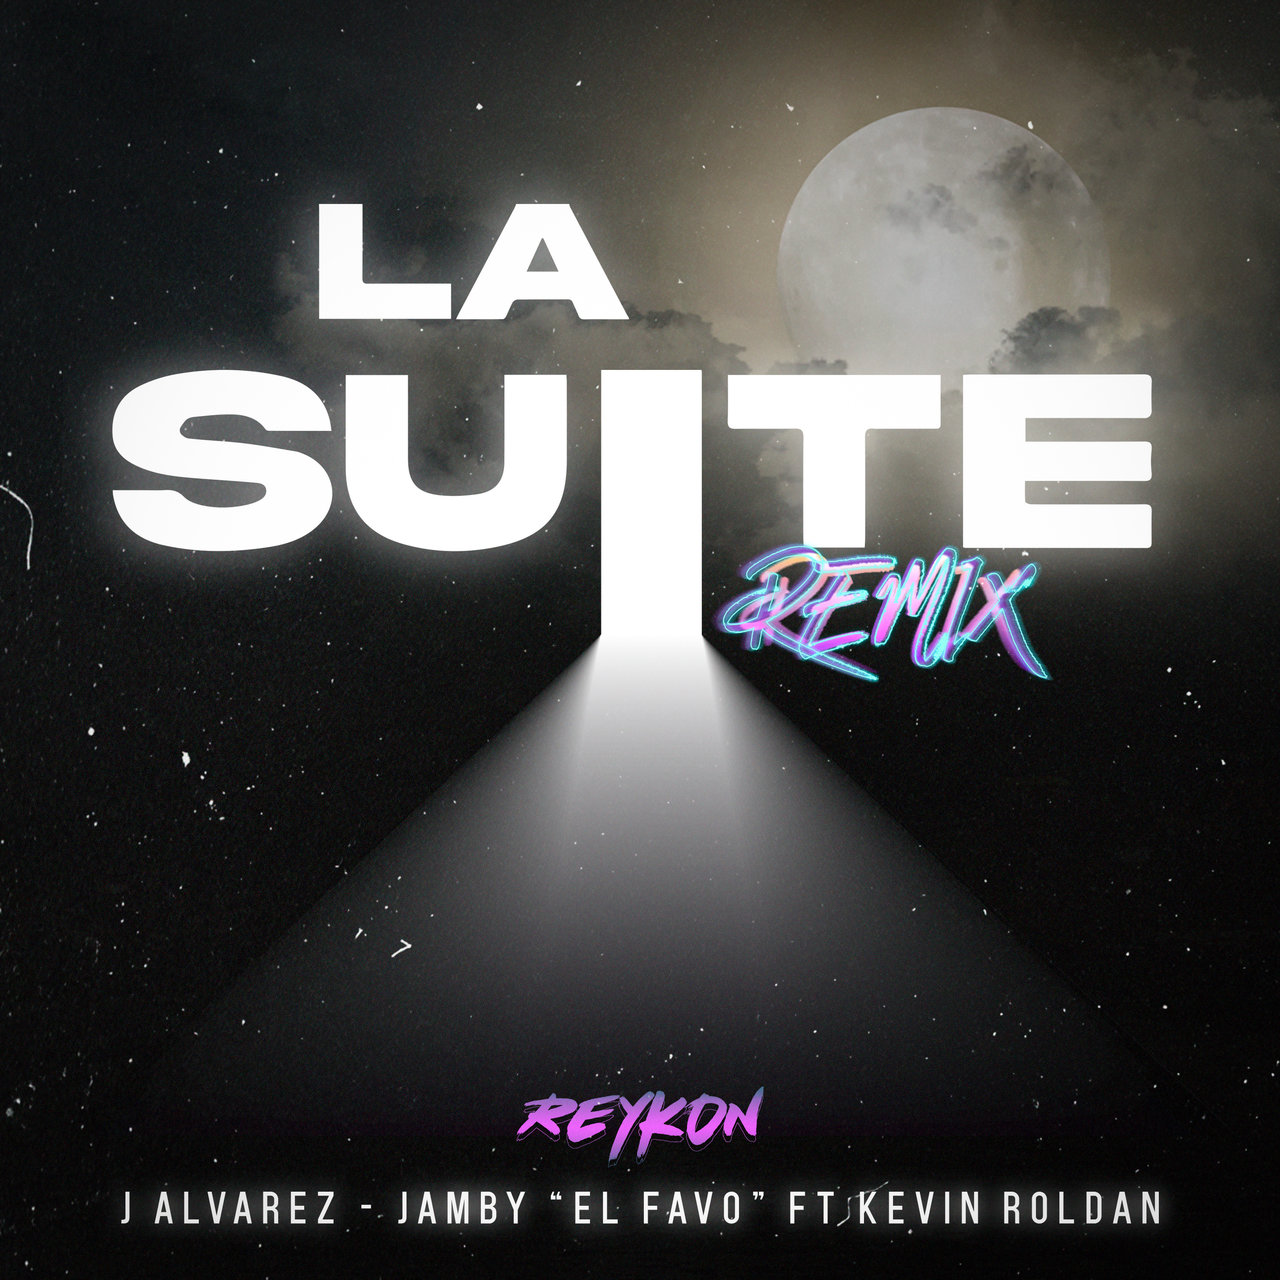 Reykon - La Suite (Remix) (ft. Kevin Roldan, J. Alvarez and Jamby El Favo) (Cover)